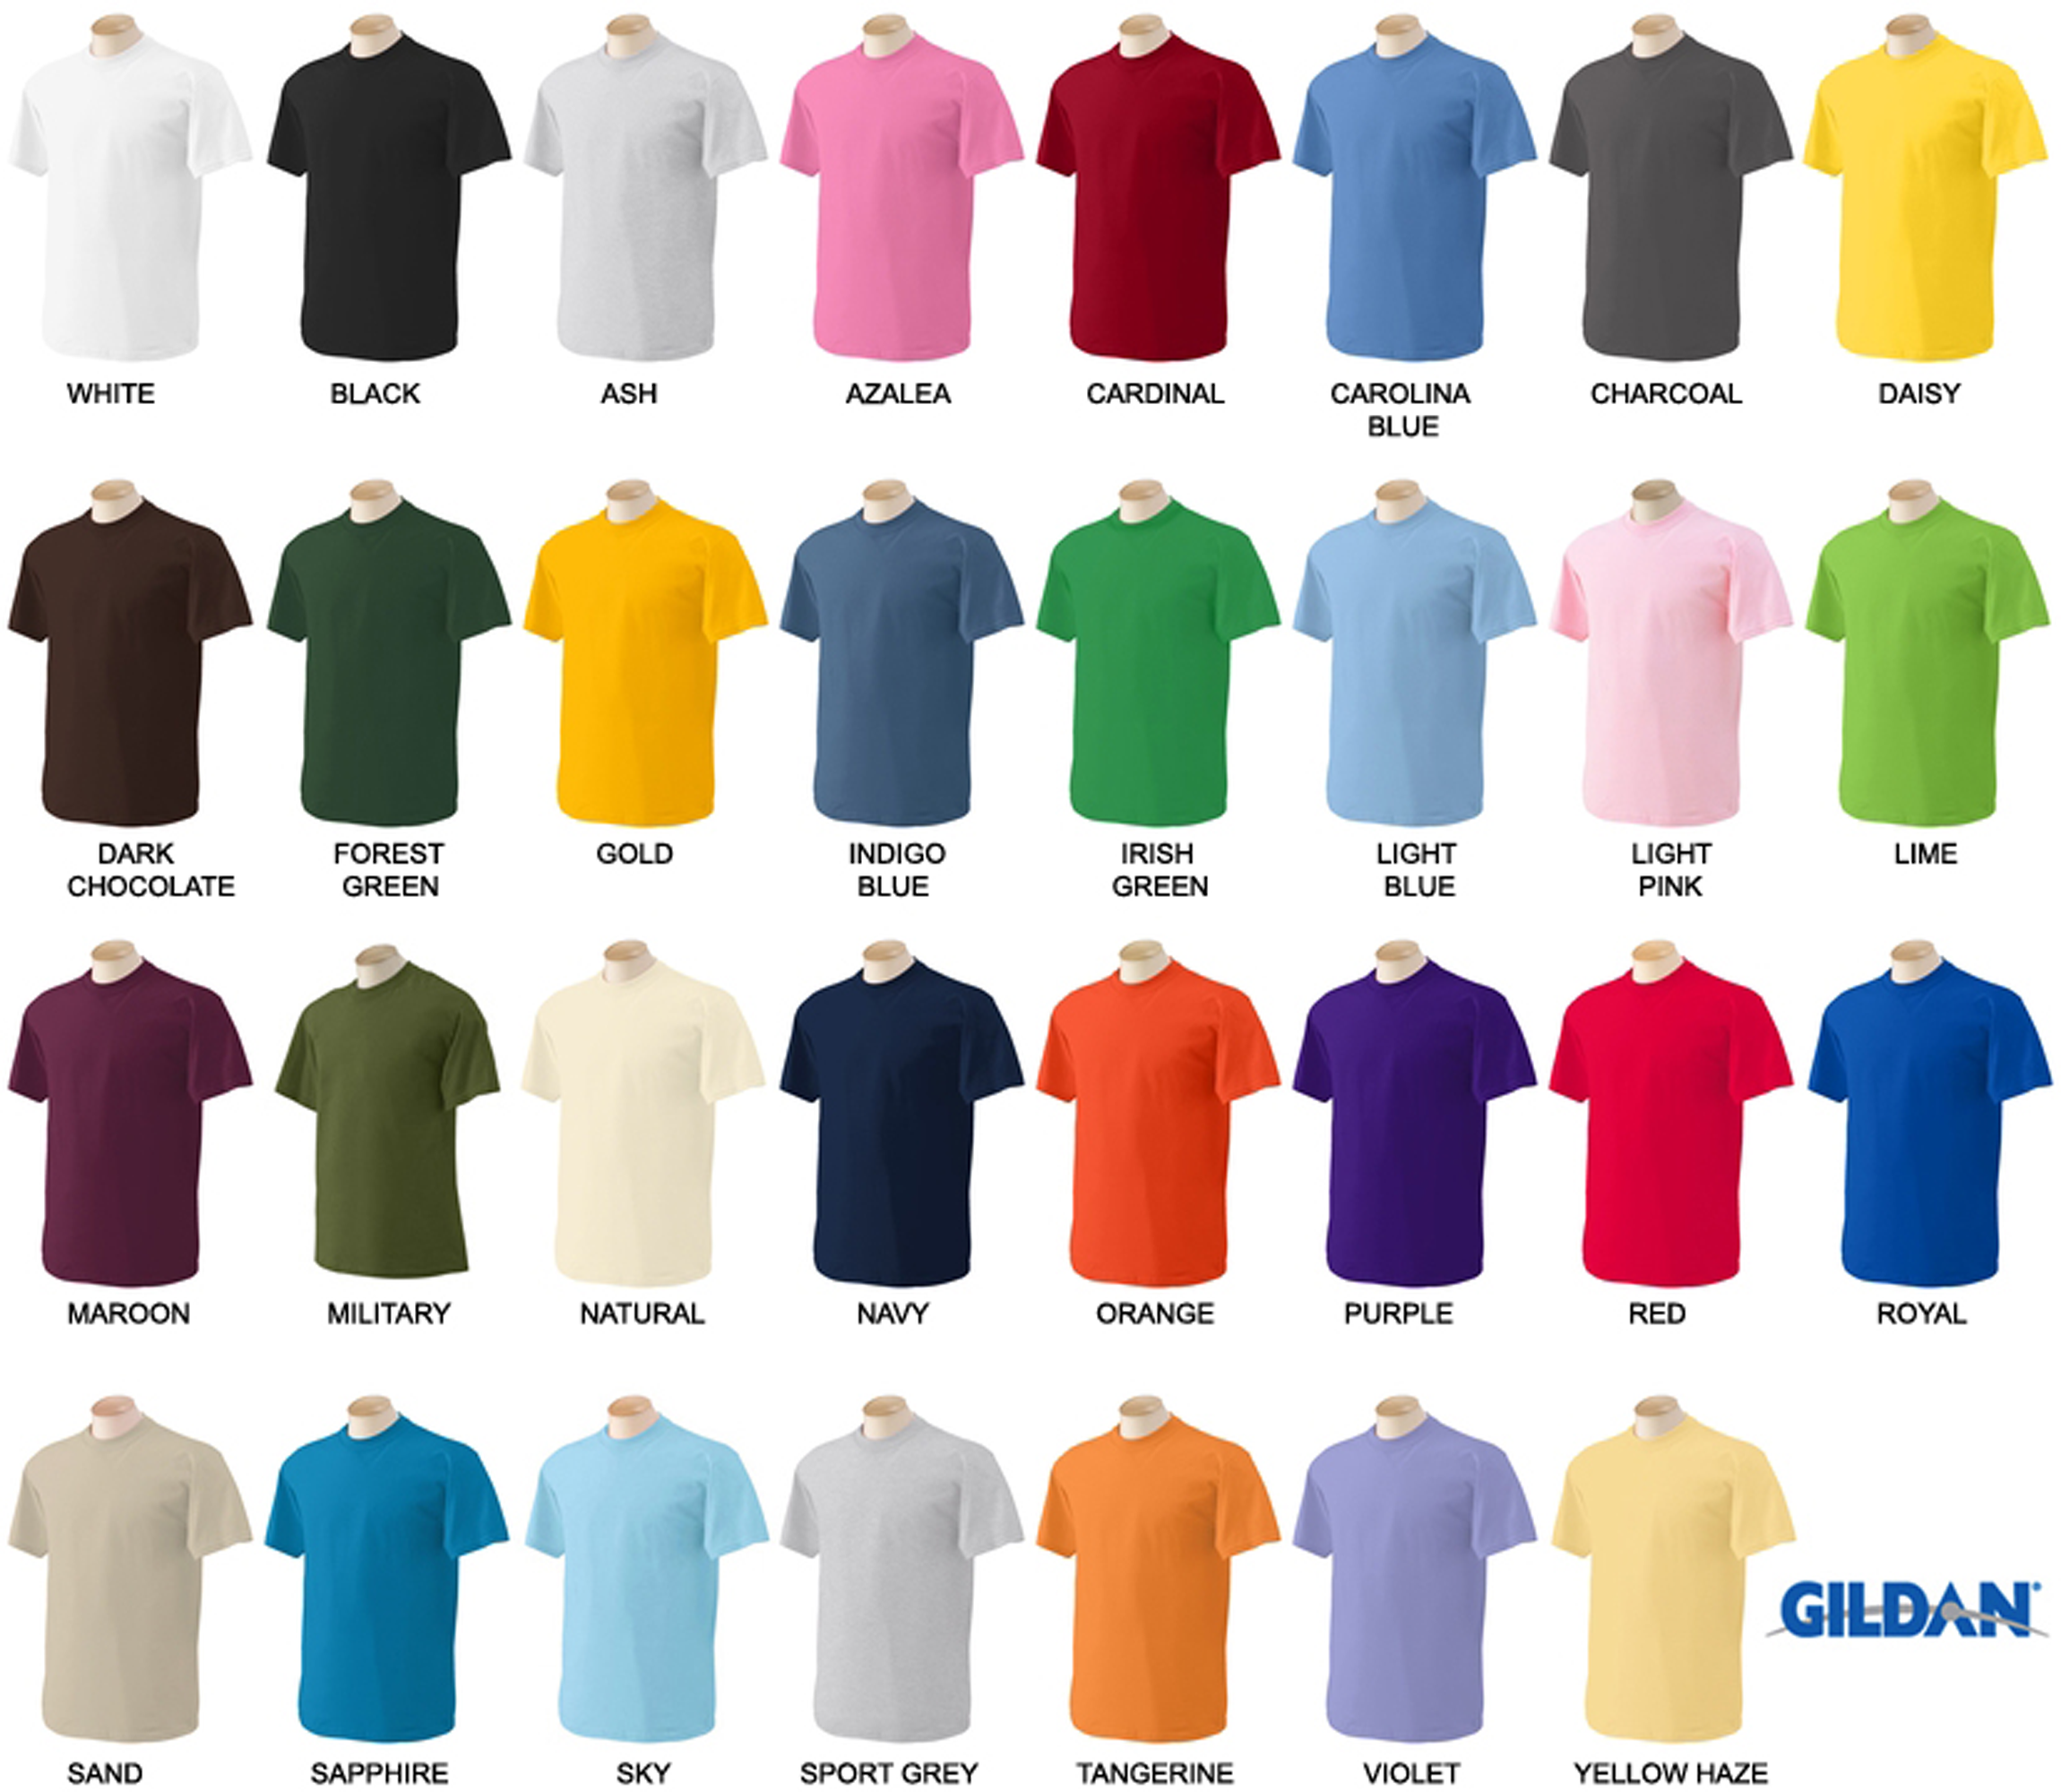 Gildan Short Sleeve Adult T-Shirt - Daisy